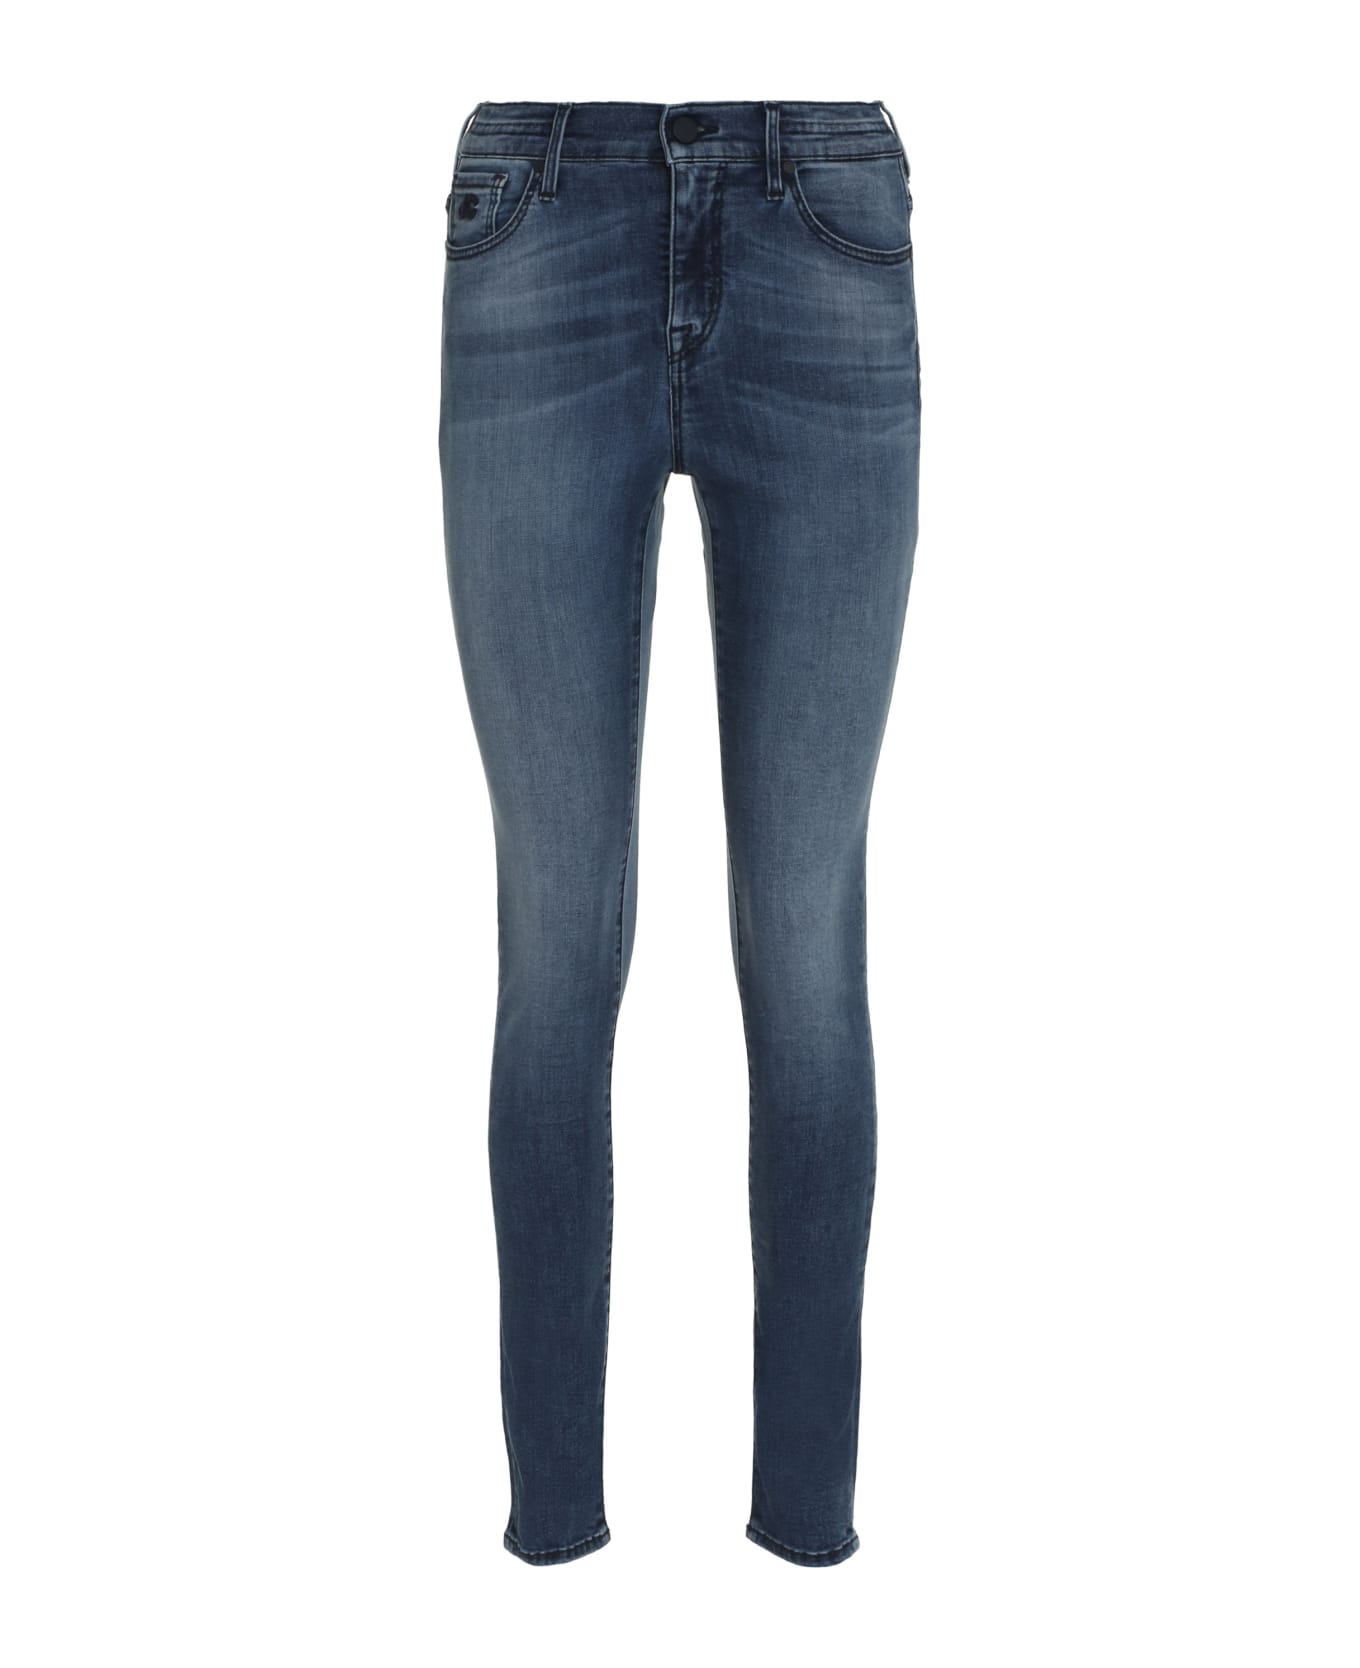 Jacob Cohen 5-pocket Jeans - Denim